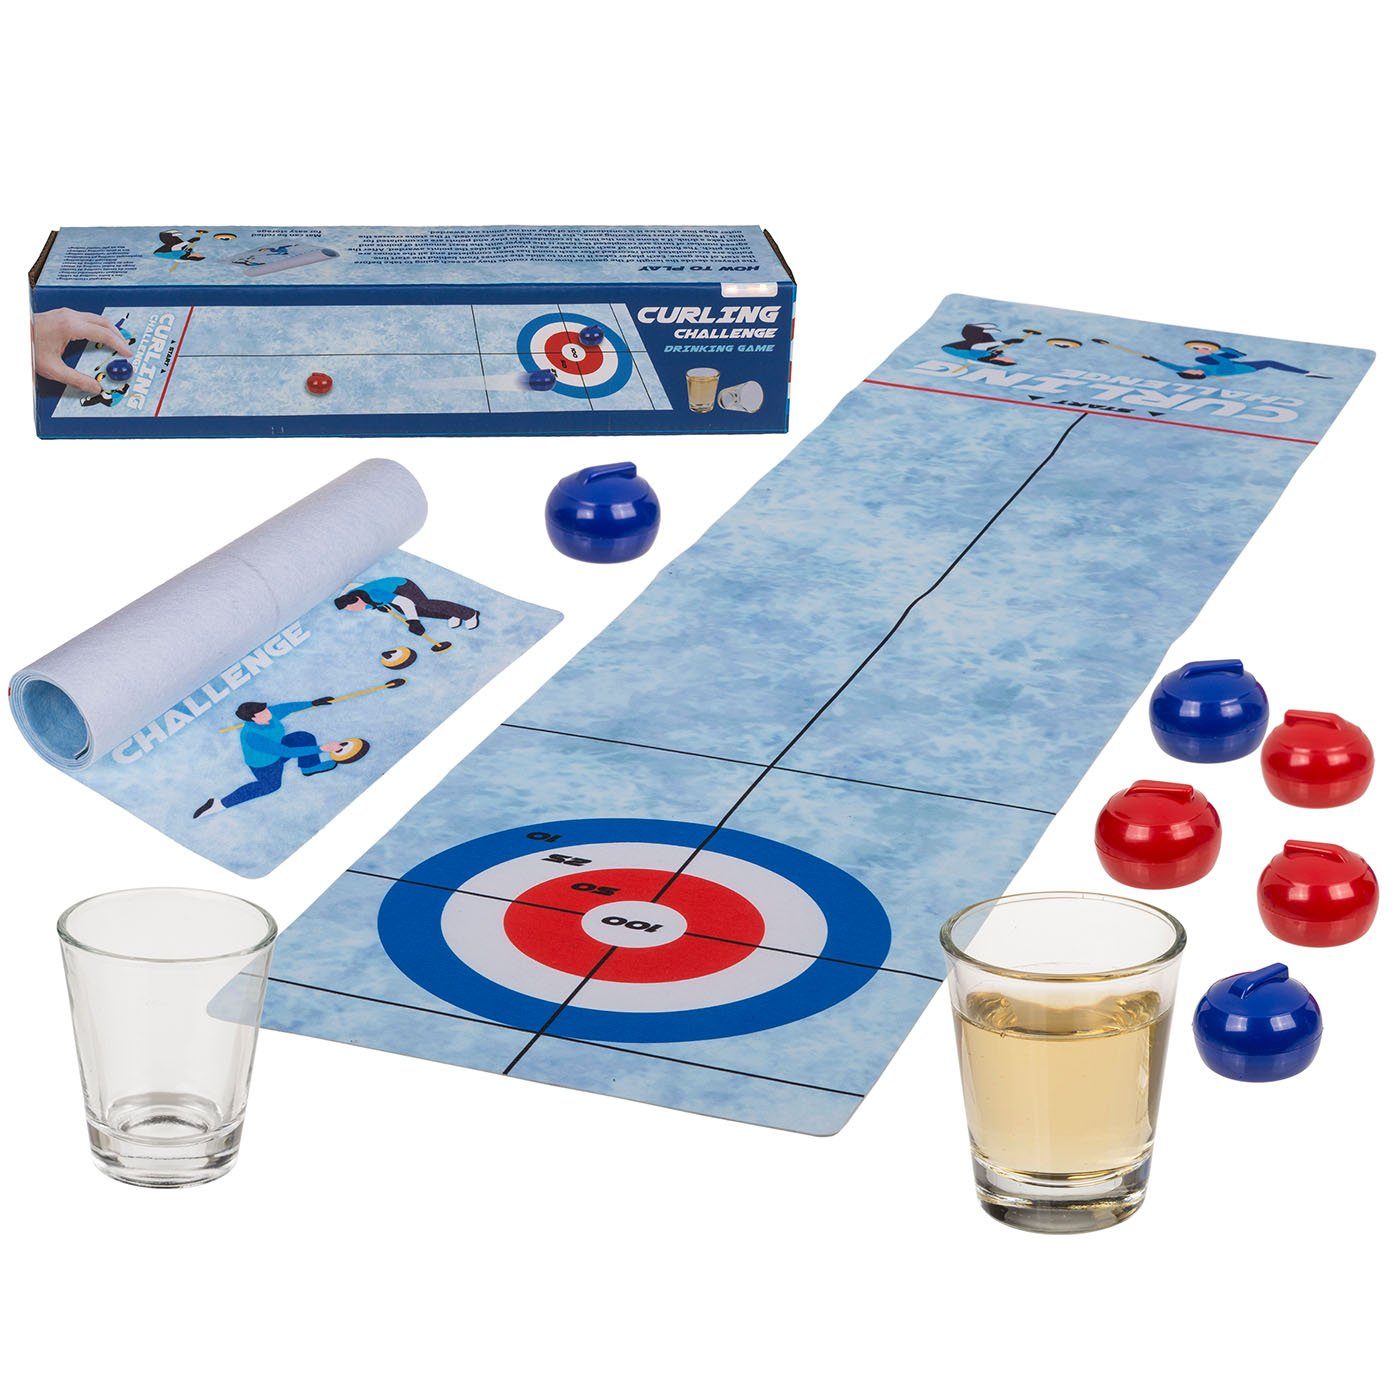 ReWu Spiel, Trinkspiel Tisch-Curling 120 x 30 cm